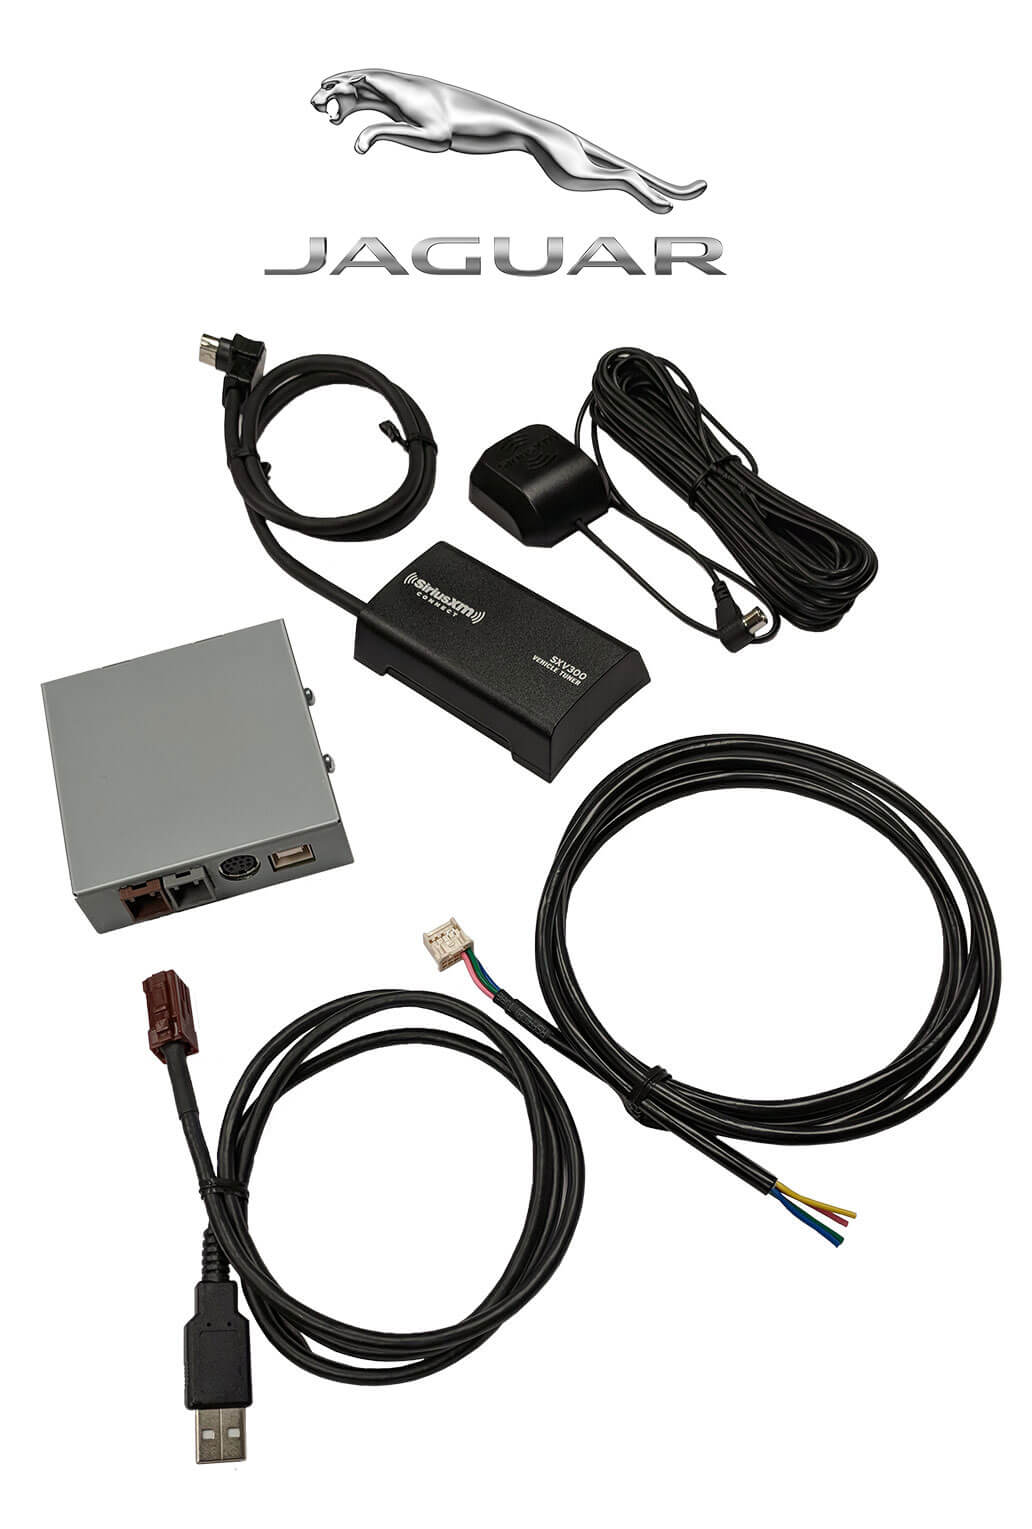 Jaguar SiriusXM Satellite Radio OEM Factory Stereo Kit